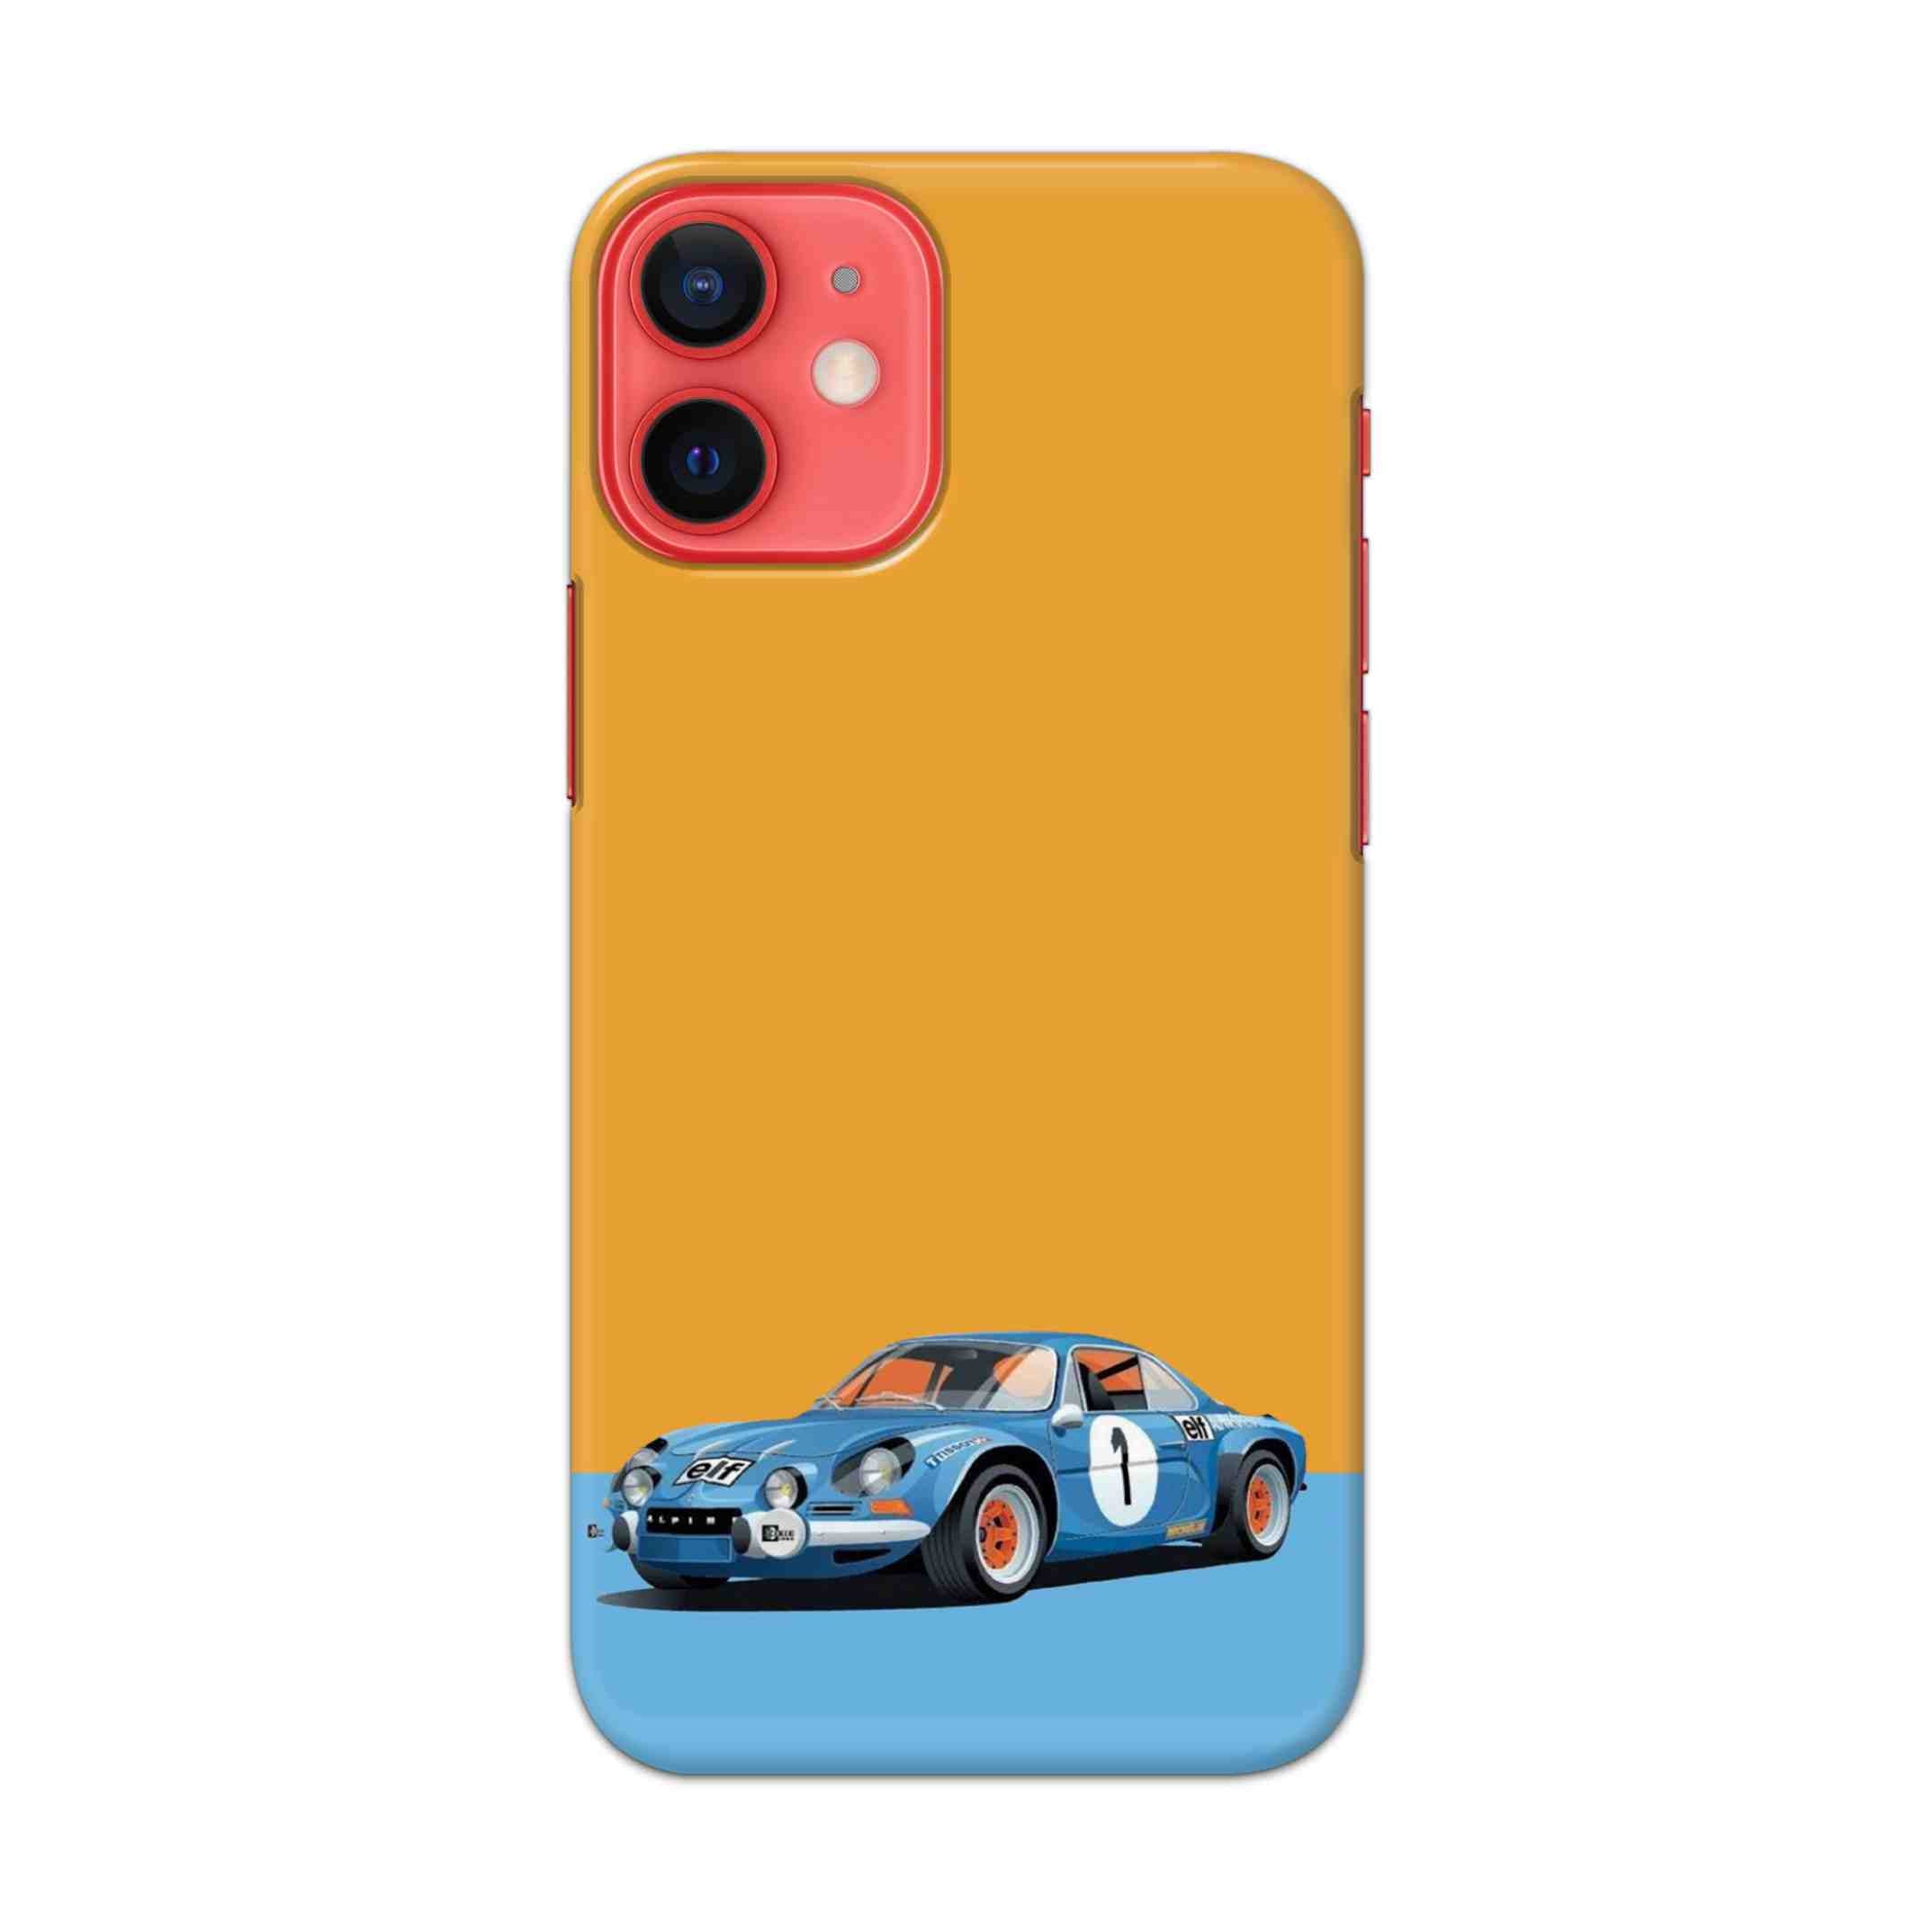 Buy Ferrari F1 Hard Back Mobile Phone Case/Cover For Apple iPhone 12 mini Online